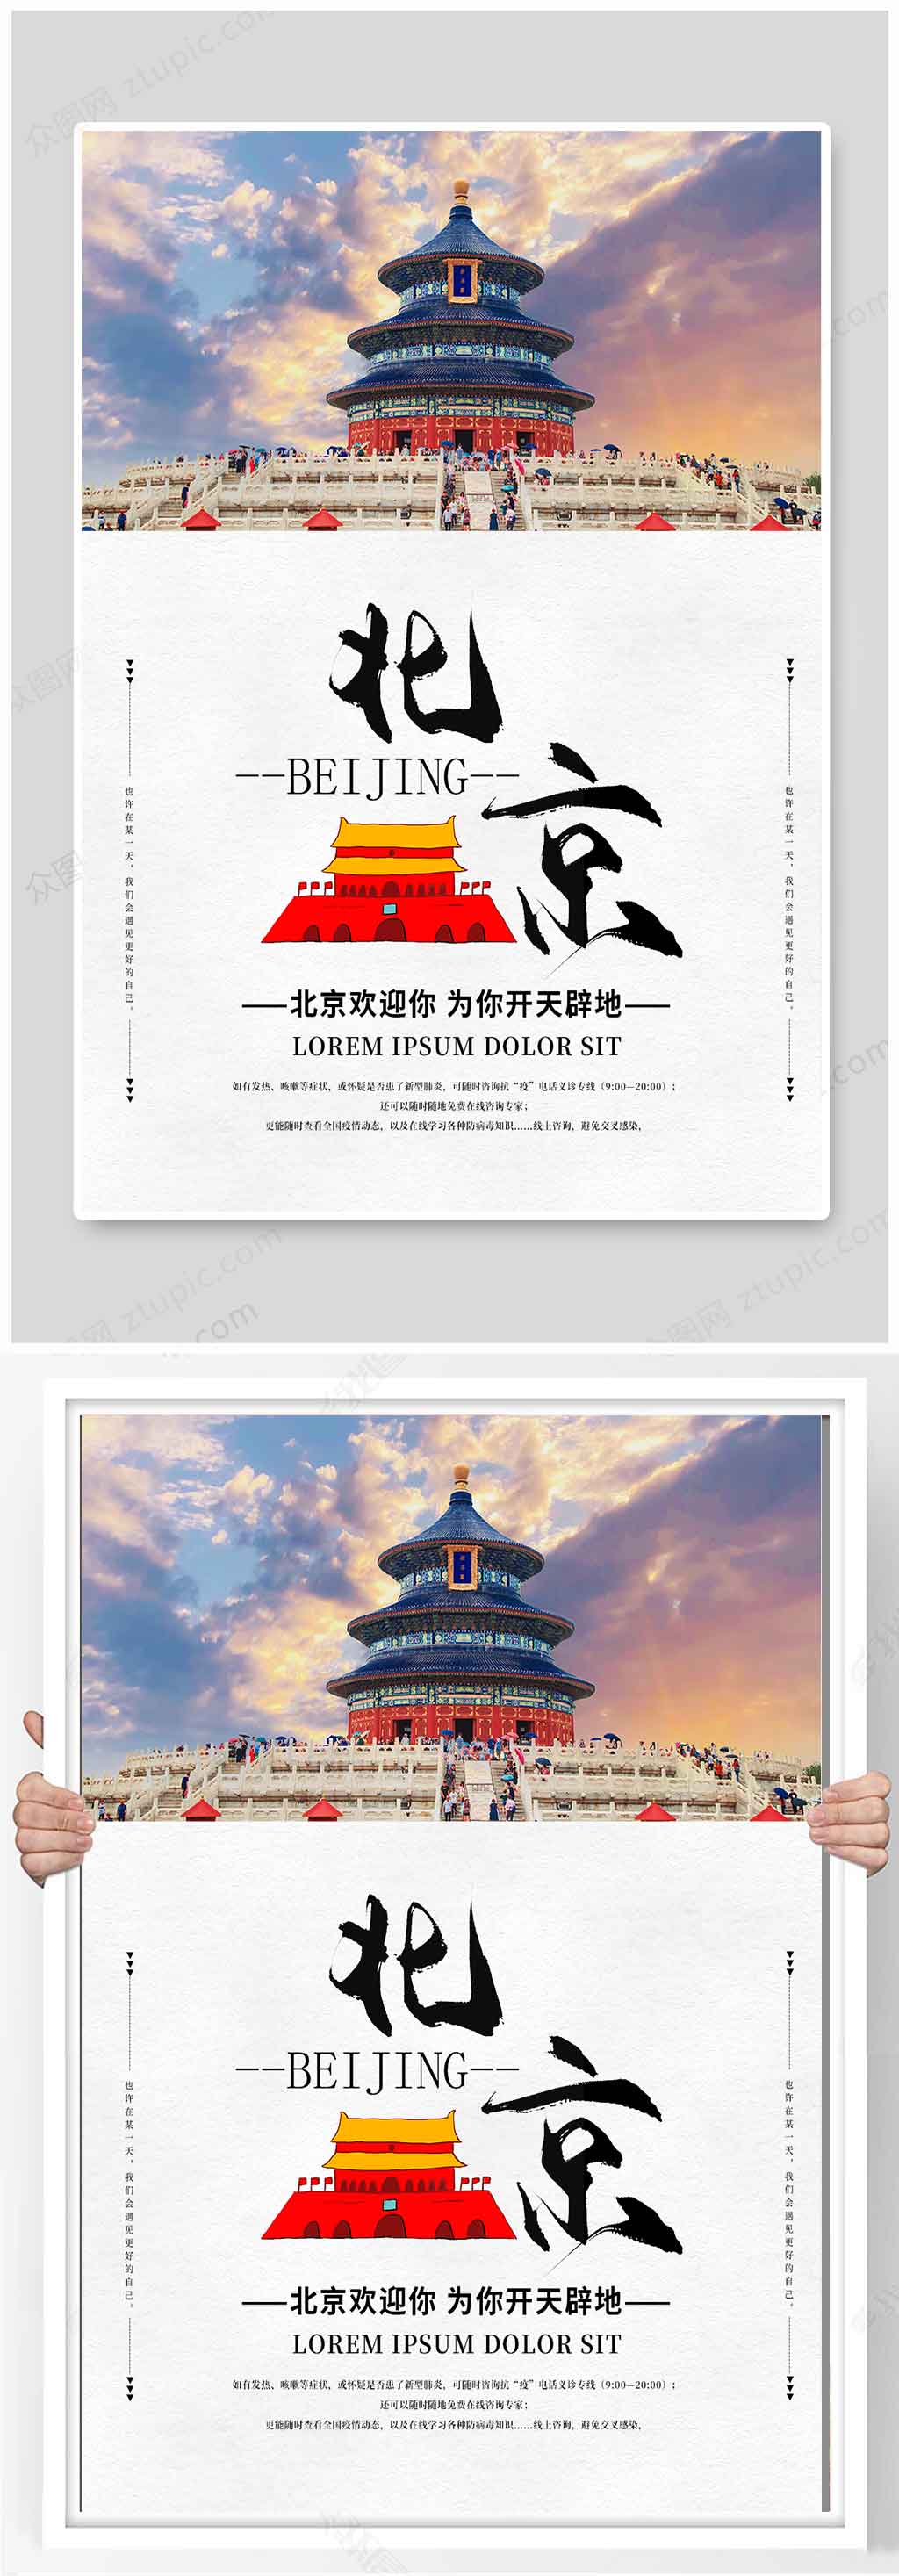 北京天坛旅游景点宣传海报